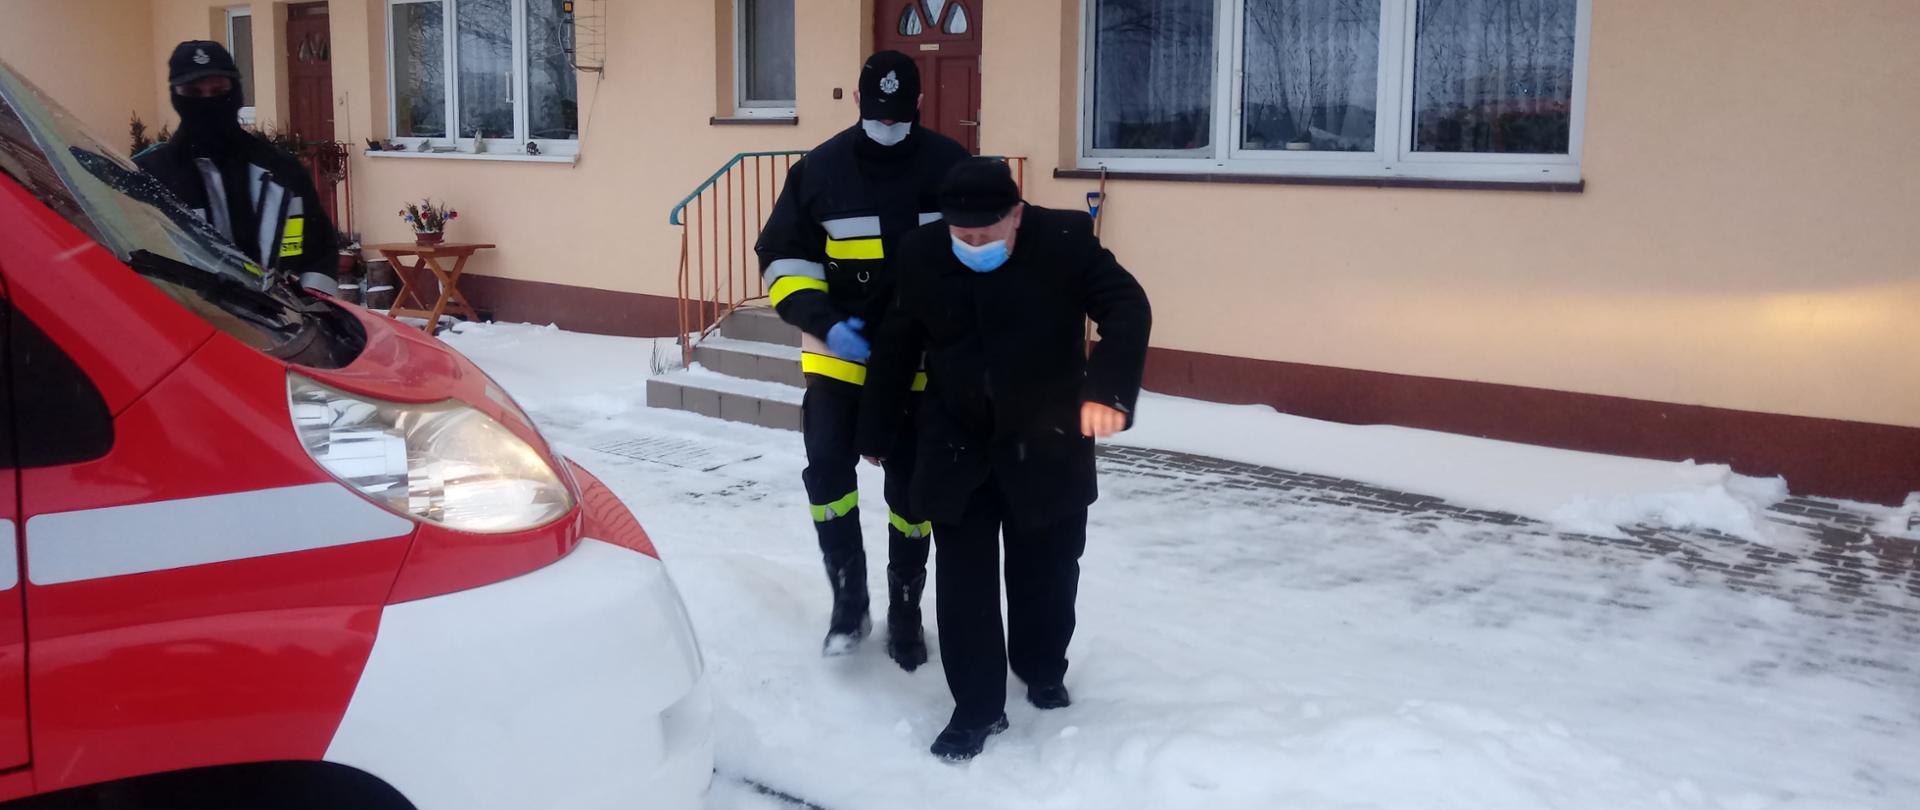 Strażak pomaga iść mężczyźnie do samochodu strażackiego. w tle jednopiętrowy beżowy budynek. na ziemii śnieg.